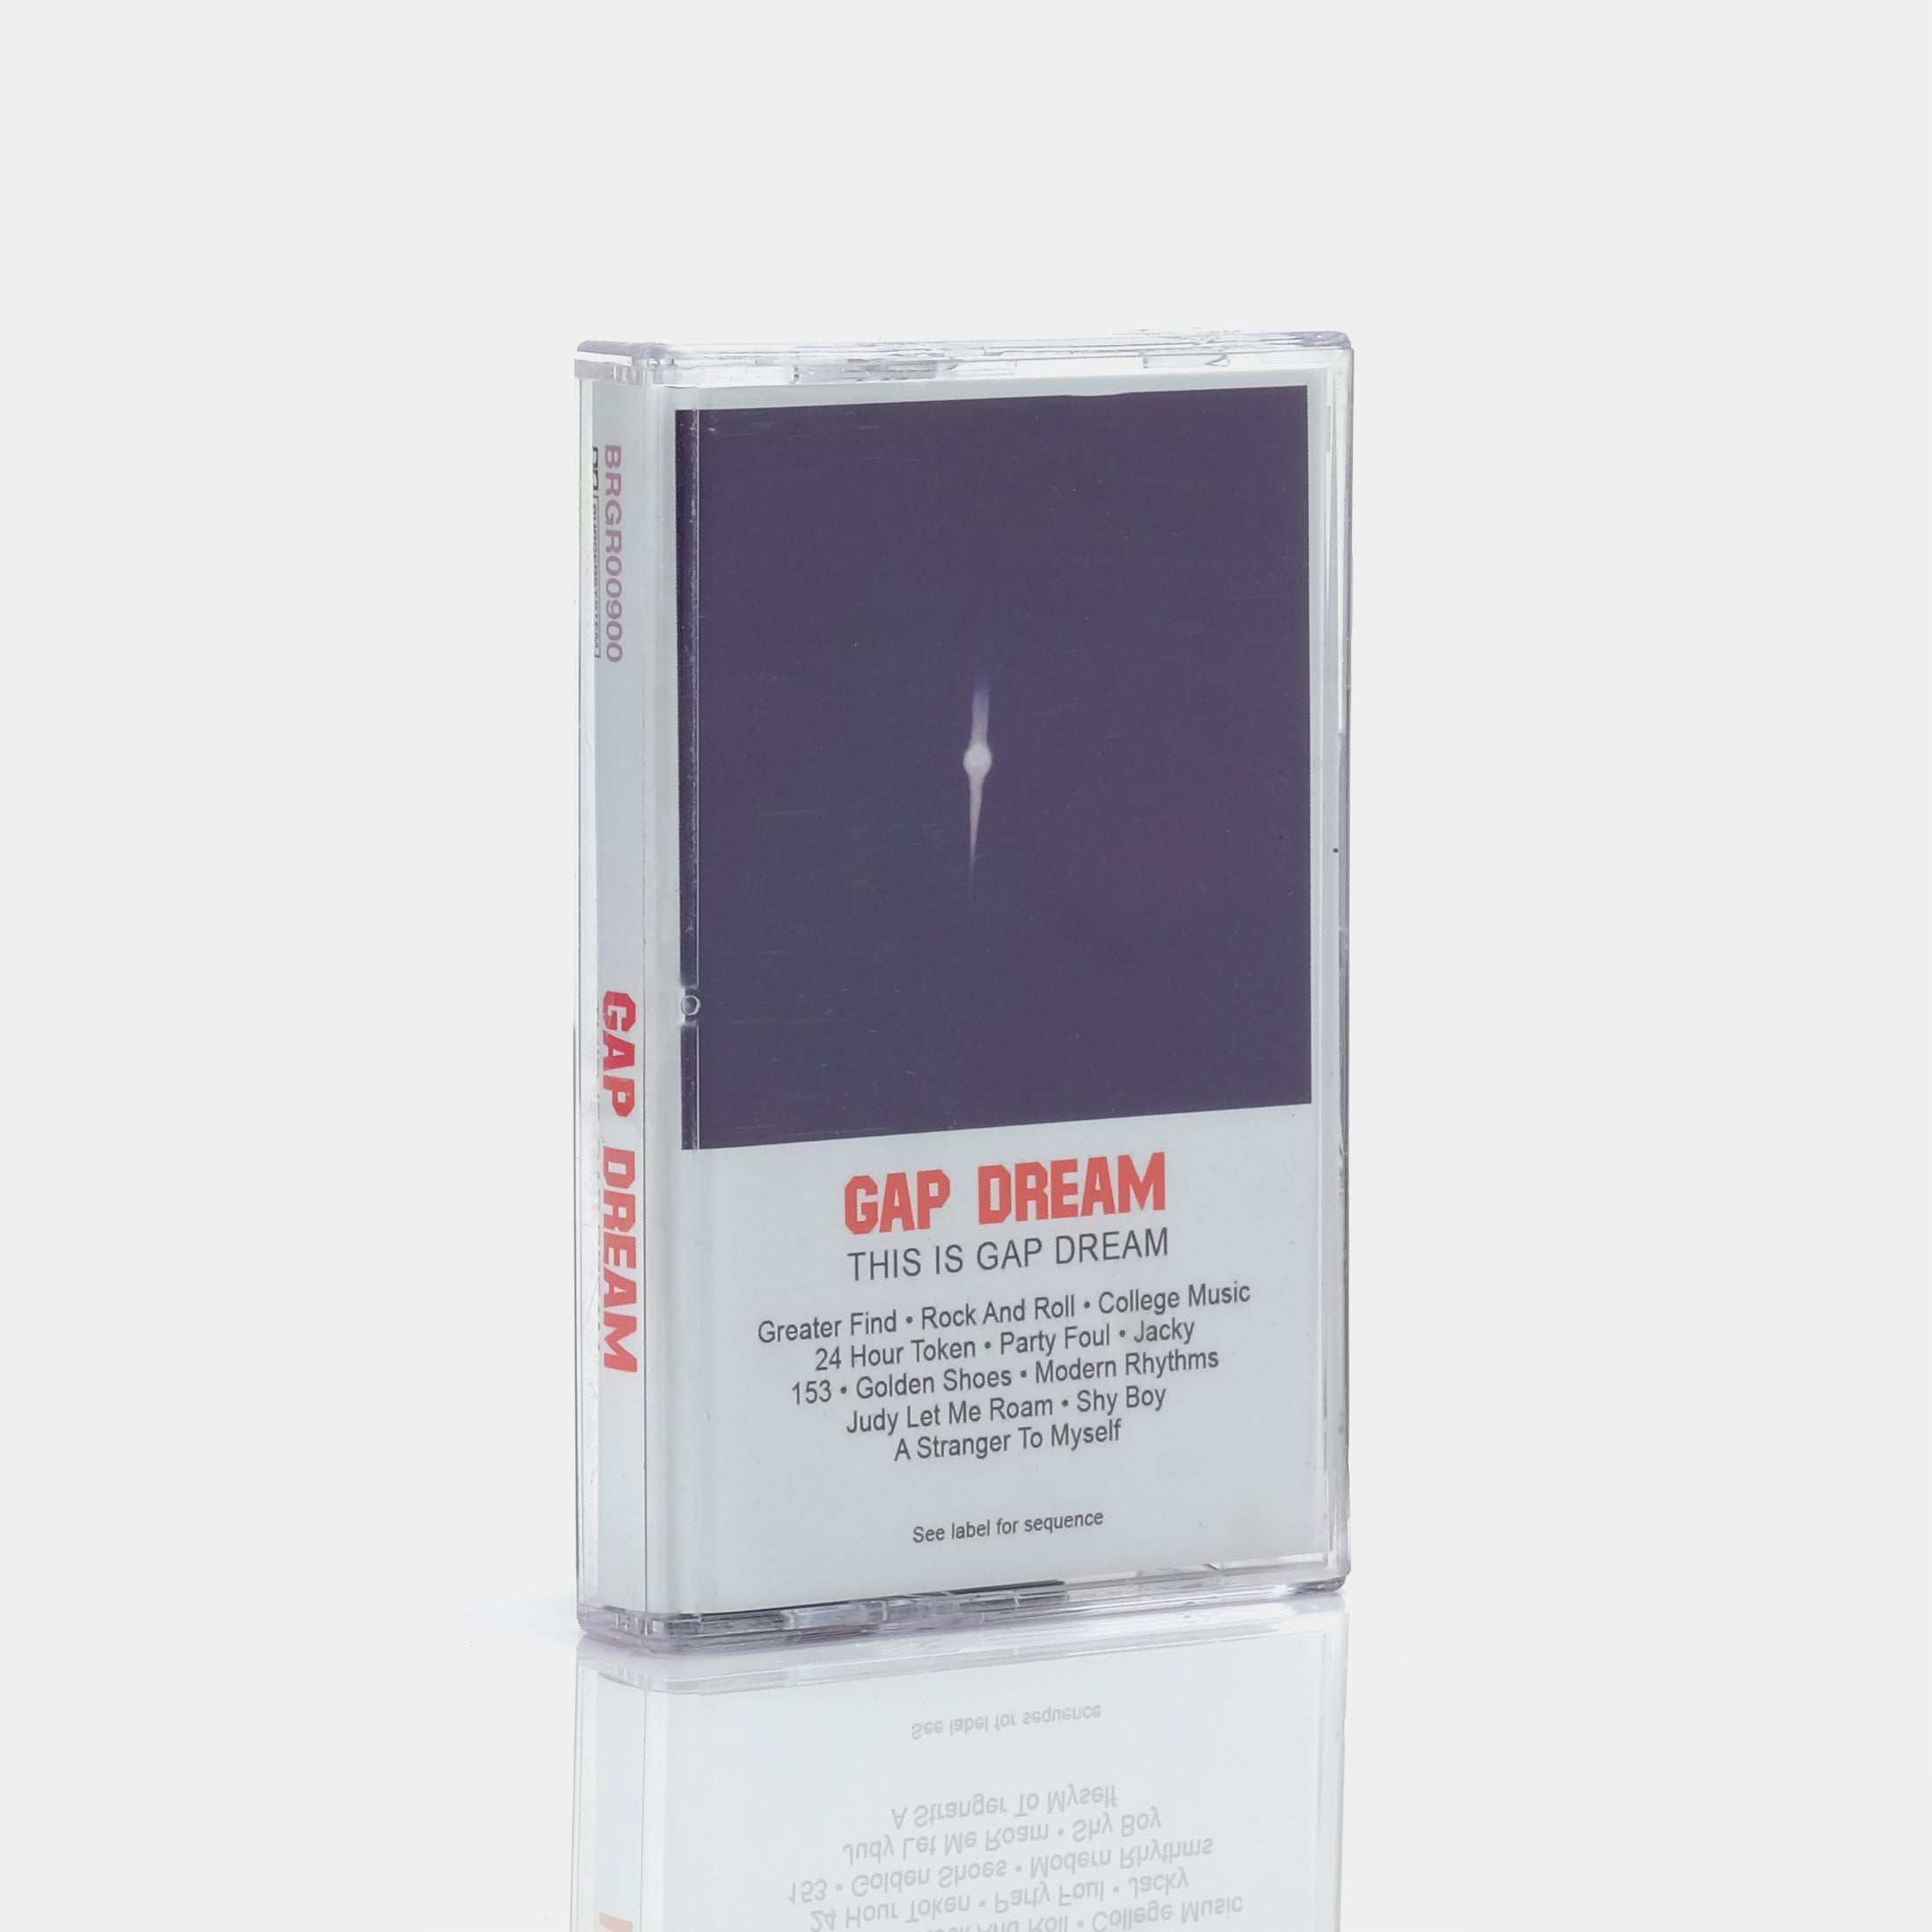 Gap Dream - This Is Gap Dream Cassette Tape